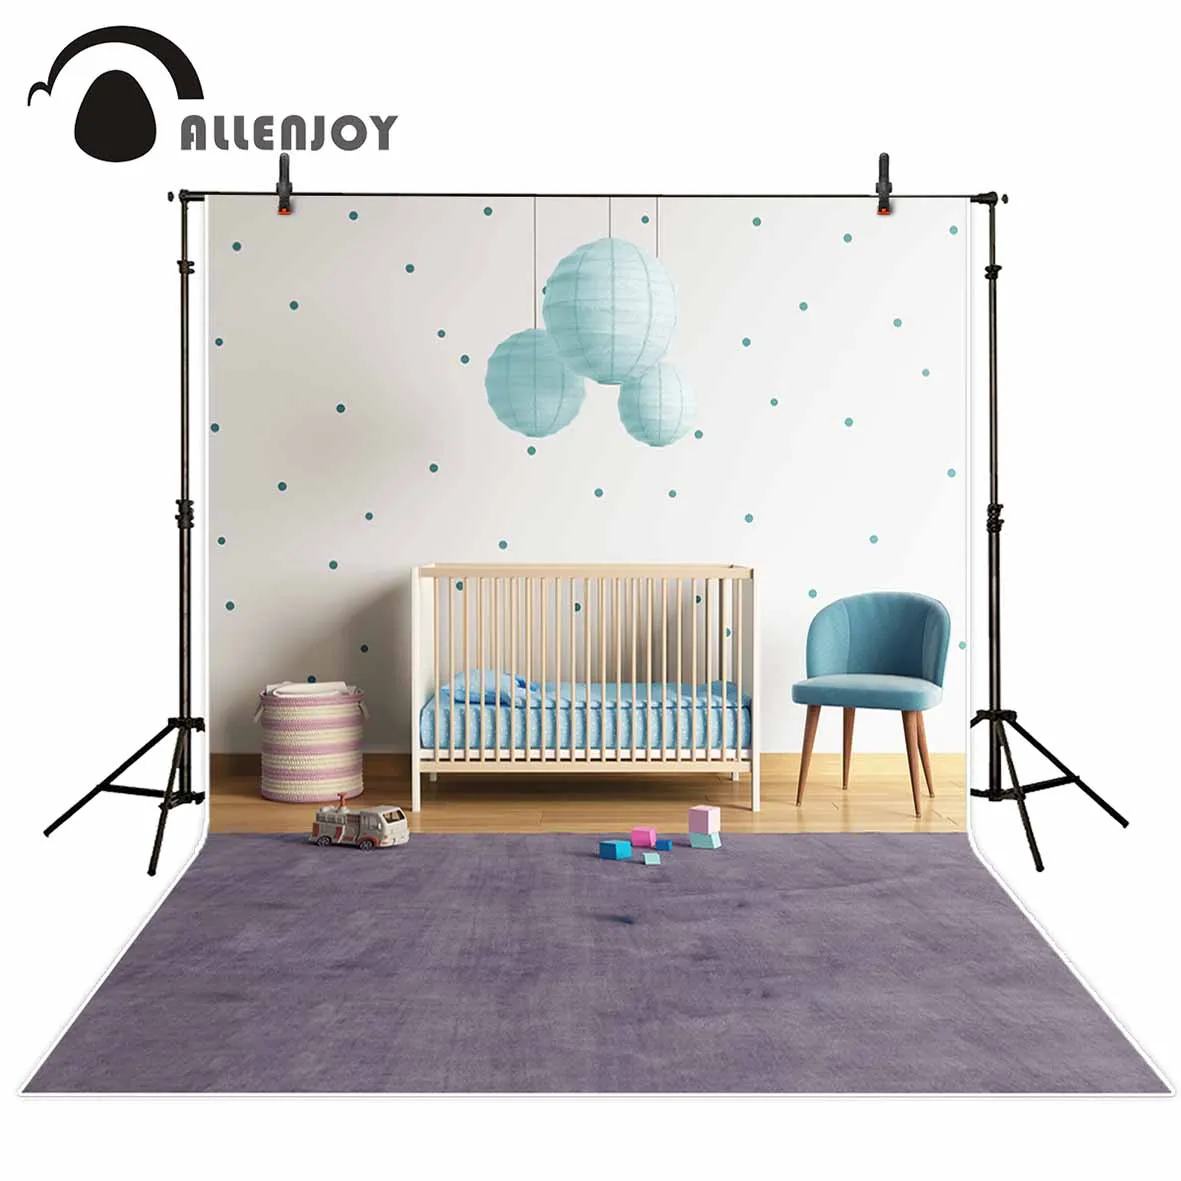 Allenjoy Детский ковер стулья Крытый фон кроватка игровая зона Детские пастельные точки стены фотографии фоны фото protrait двери